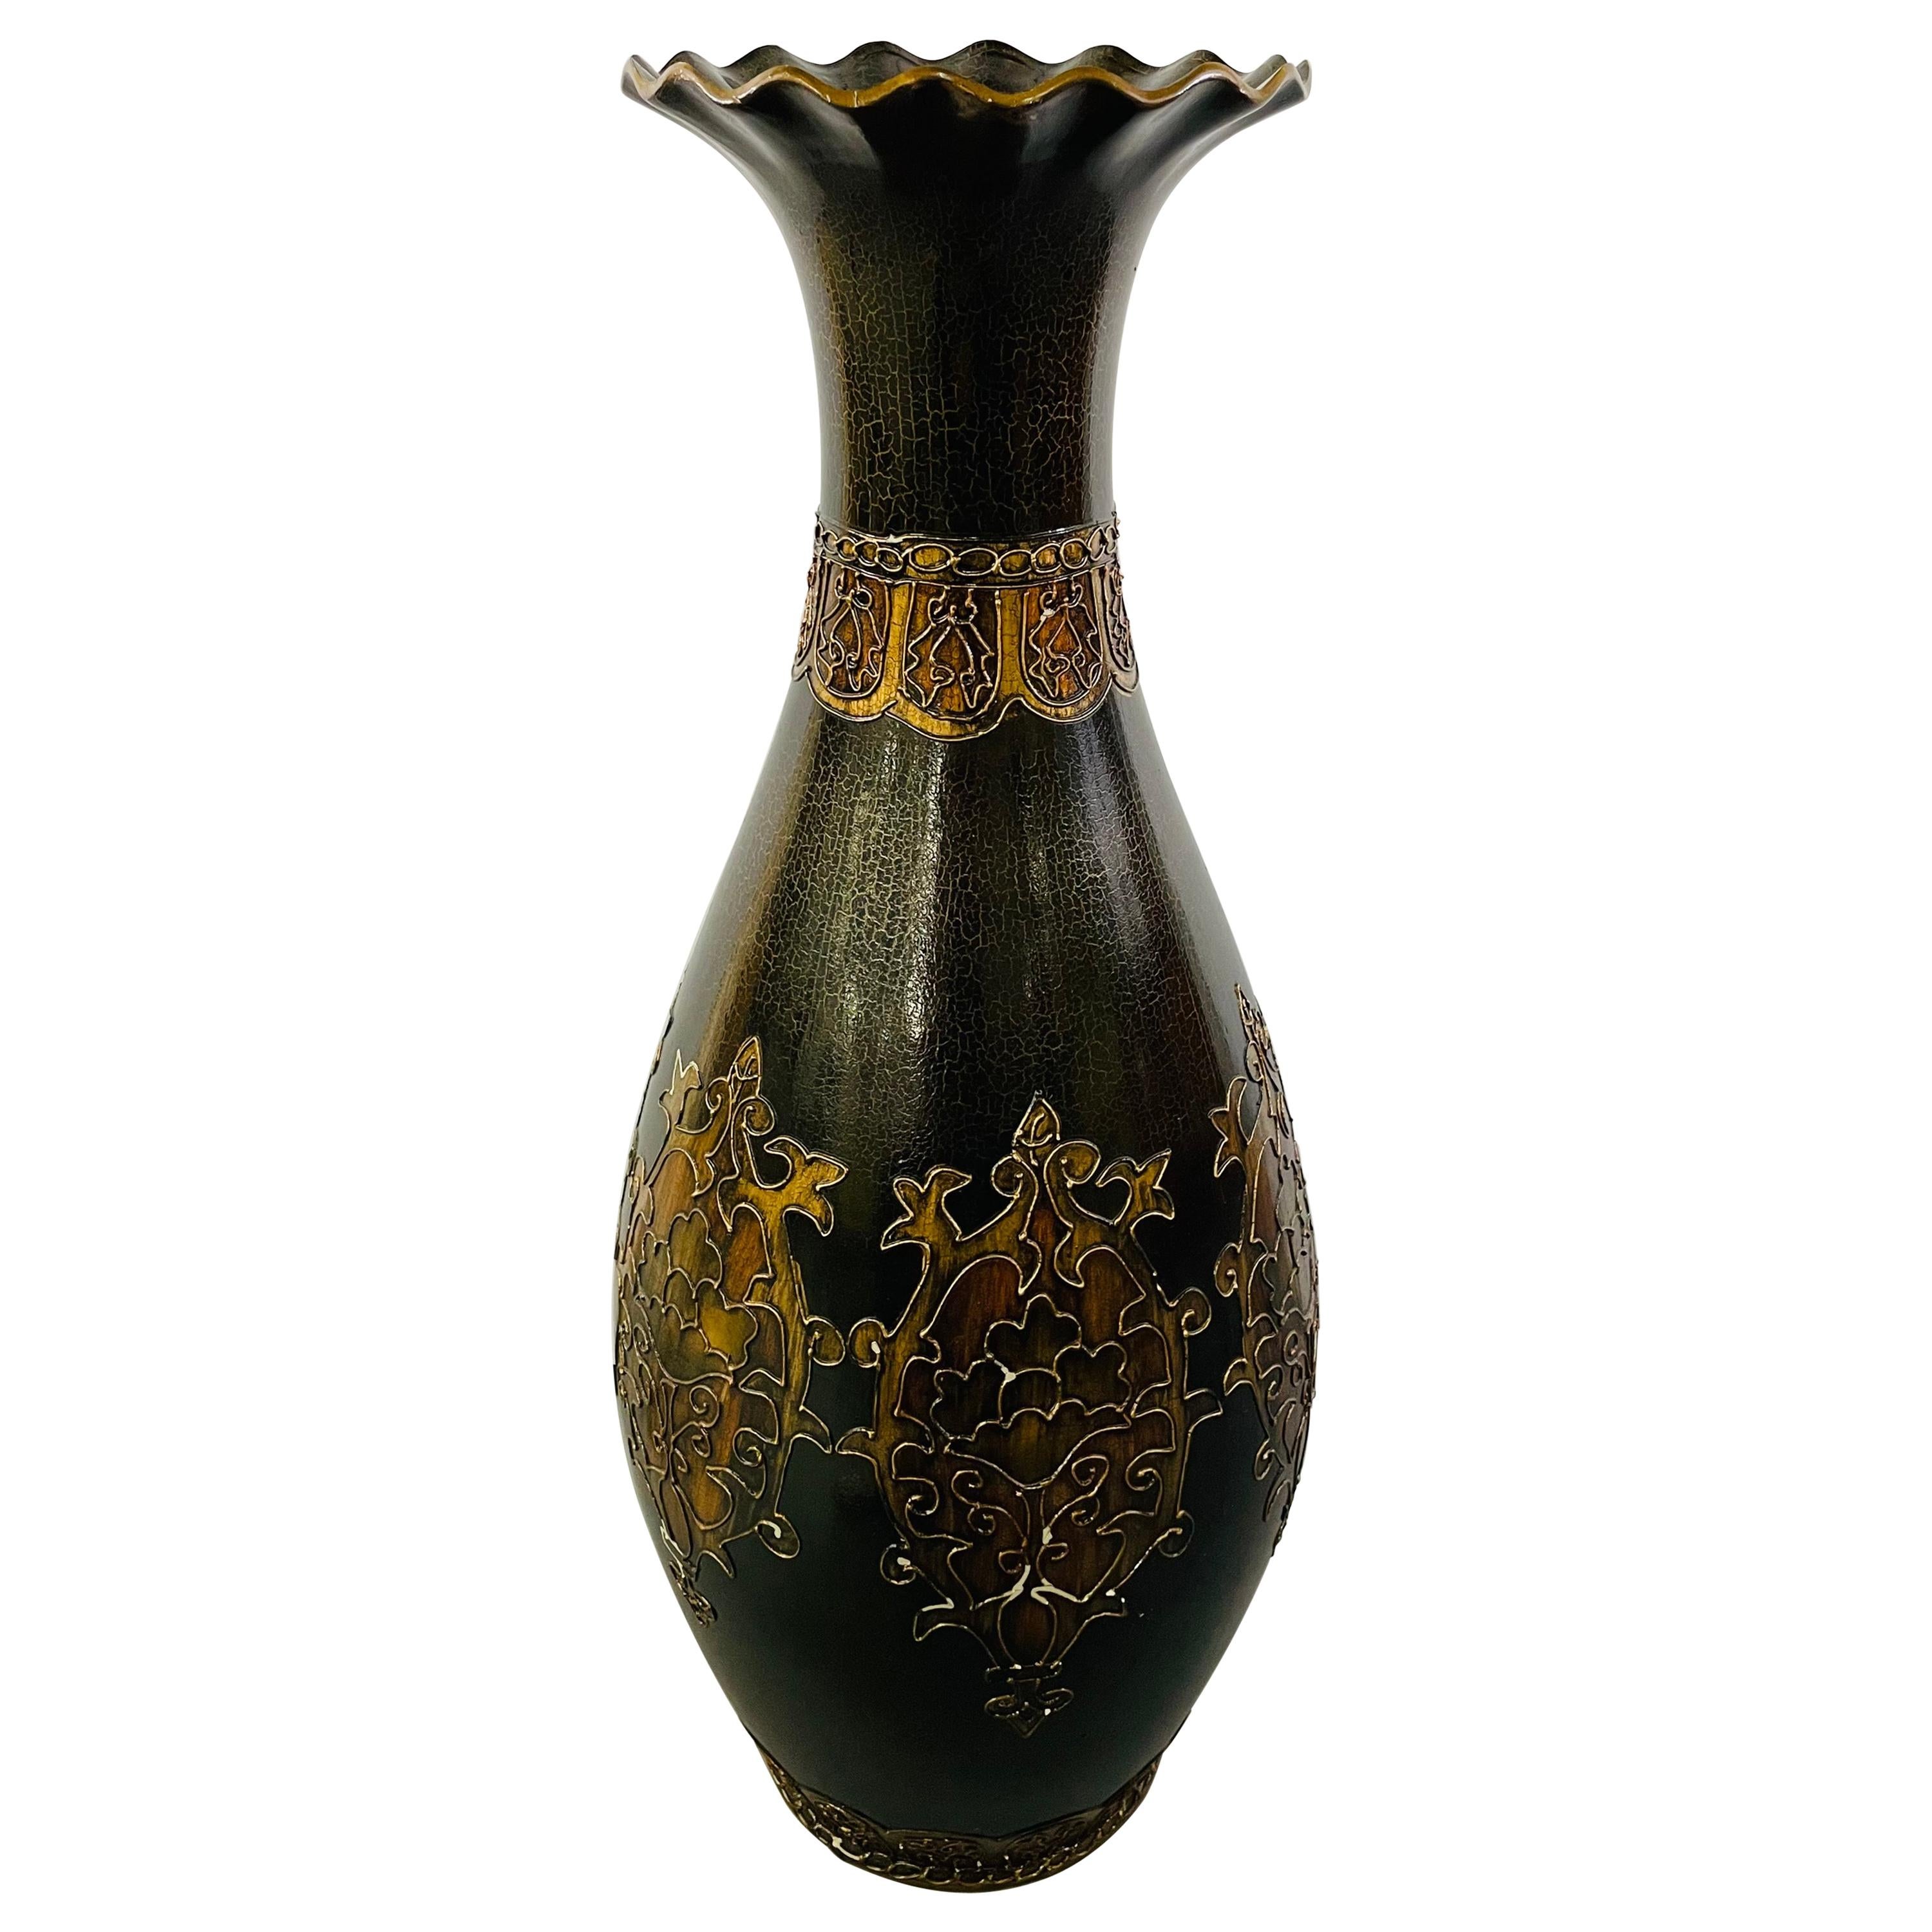 Monumentaler Jugendstil-Stil in Schwarz und Gold  Emaillierte Vase mit floralem Radierungsdesign